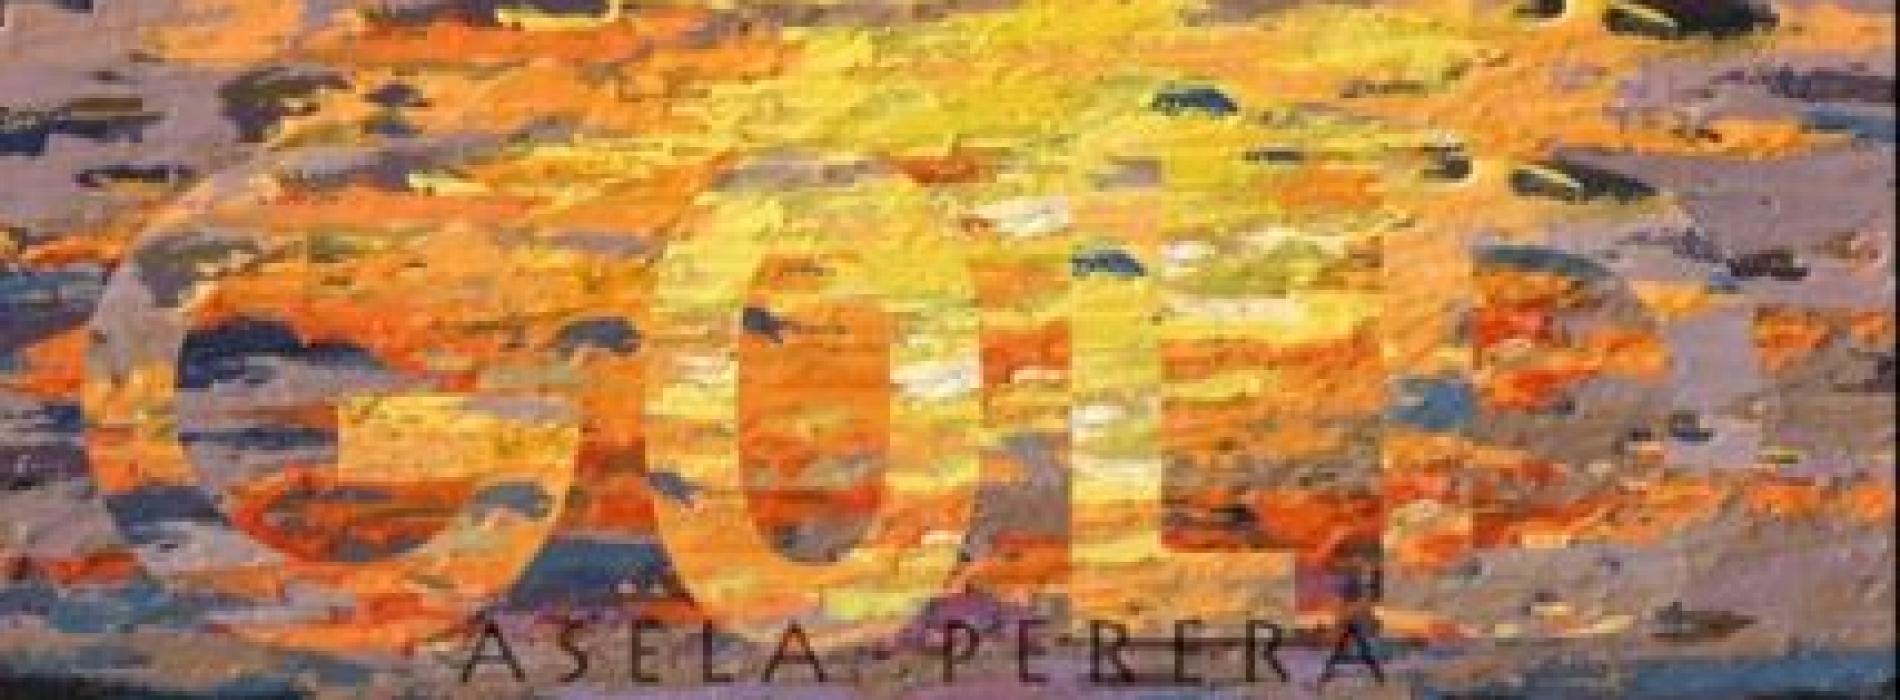 Asela Perera – GOLD (Official Audio)